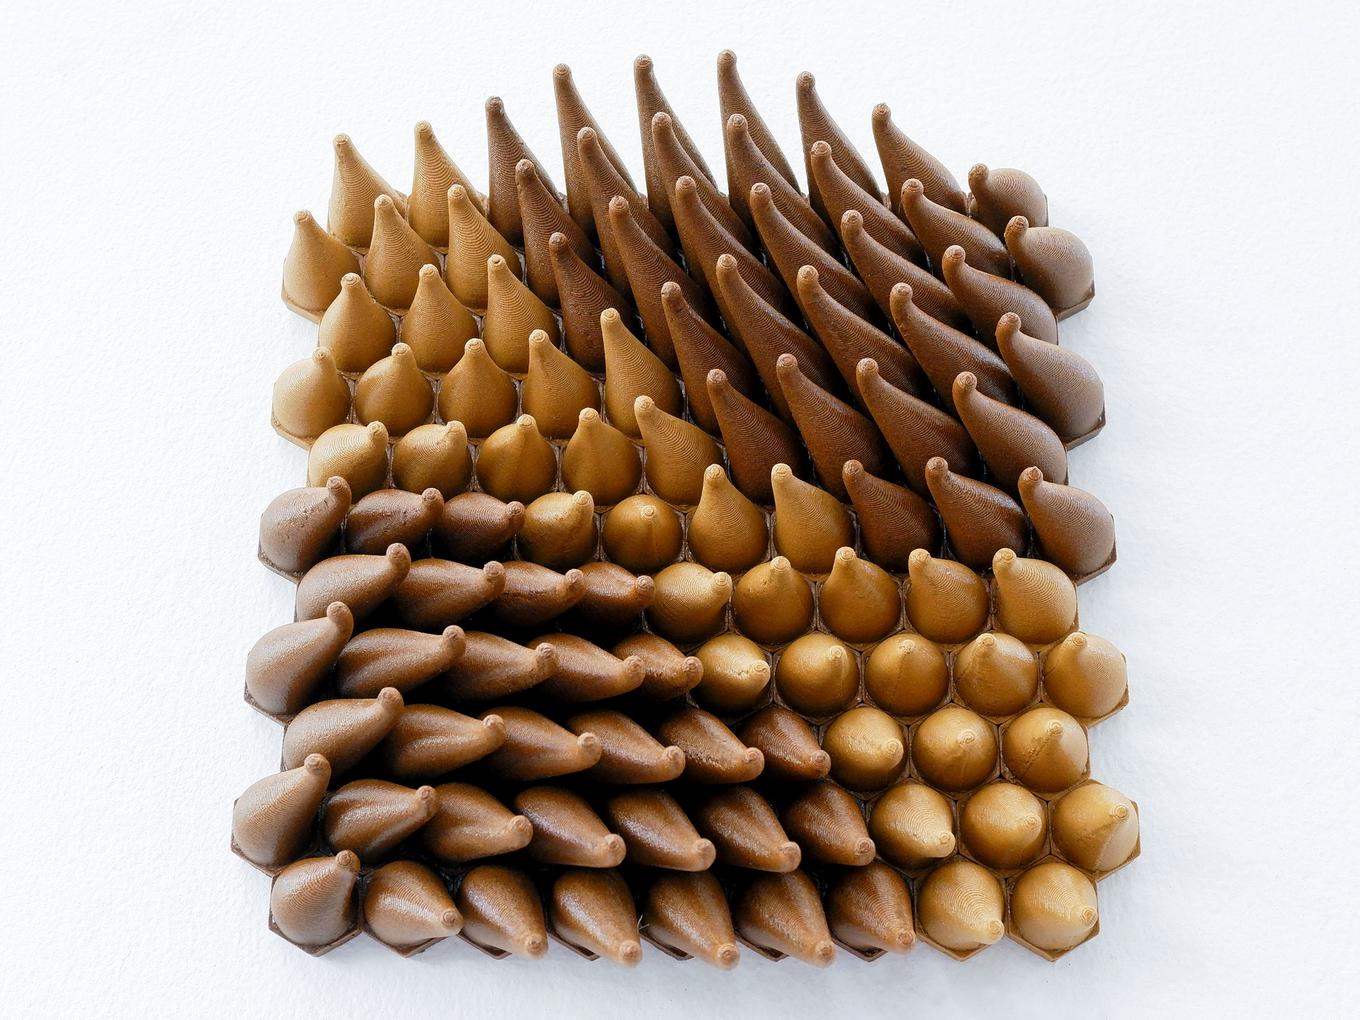 Wooden Sweepy Sprouts | Herschel Shapiro | Modern Dimensional 3D Wall Art Mosaic